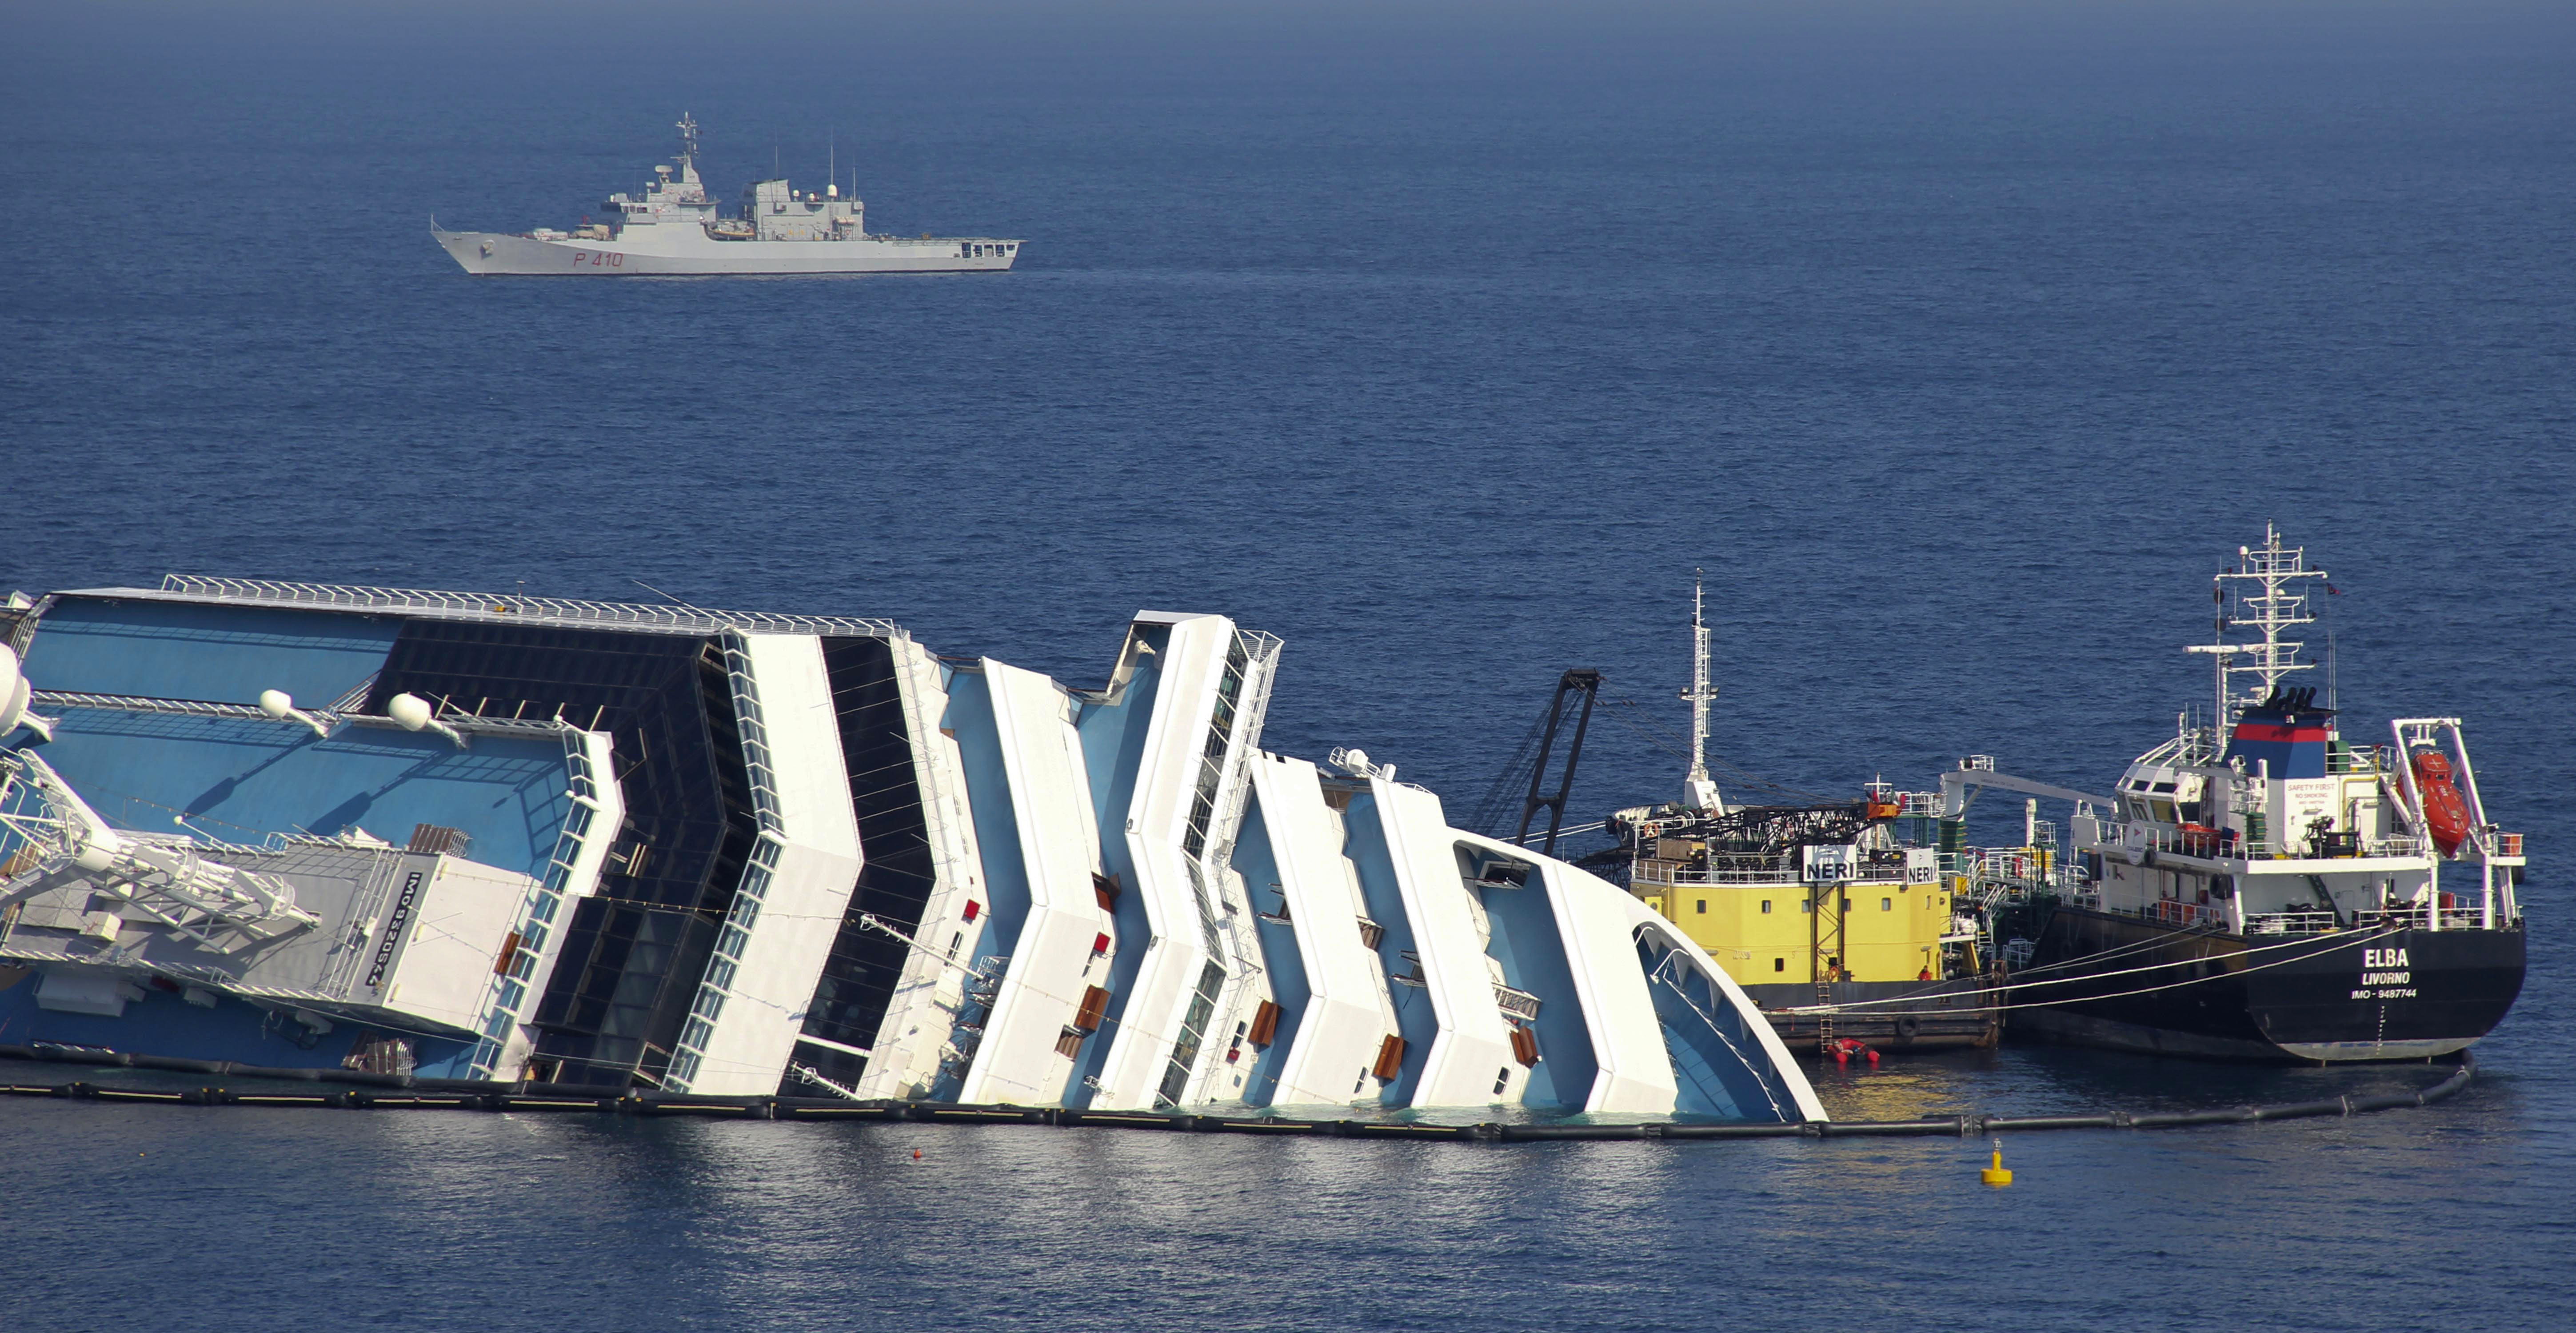 5. Att åka på en kryssningsresa är ingen bra idé. Senast vi fick genomlida en fredagen den 13:e gick det italienska kryssningsfartyget Costa Concordia på grund och minst 30 personer omkom.